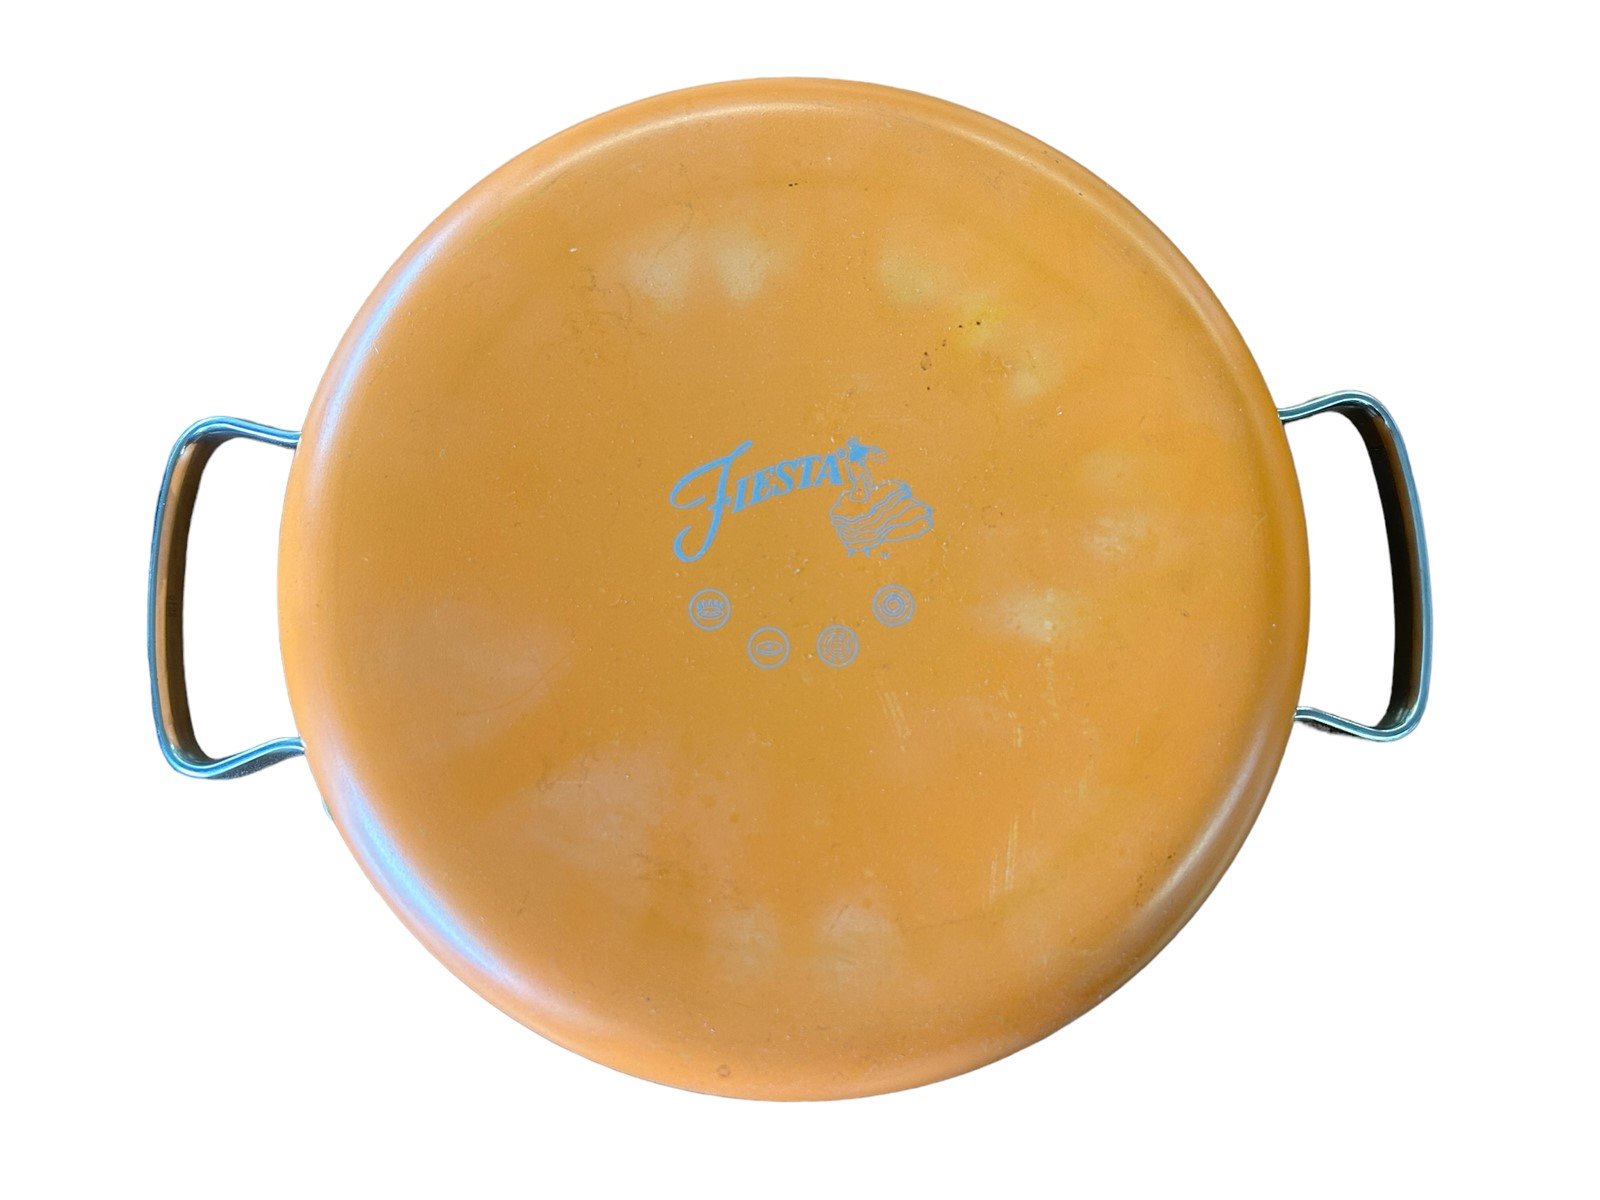 Fiesta Pot With Lid Tangerine Sauce Pan Cookware Dinnerware Fiestaware Orange